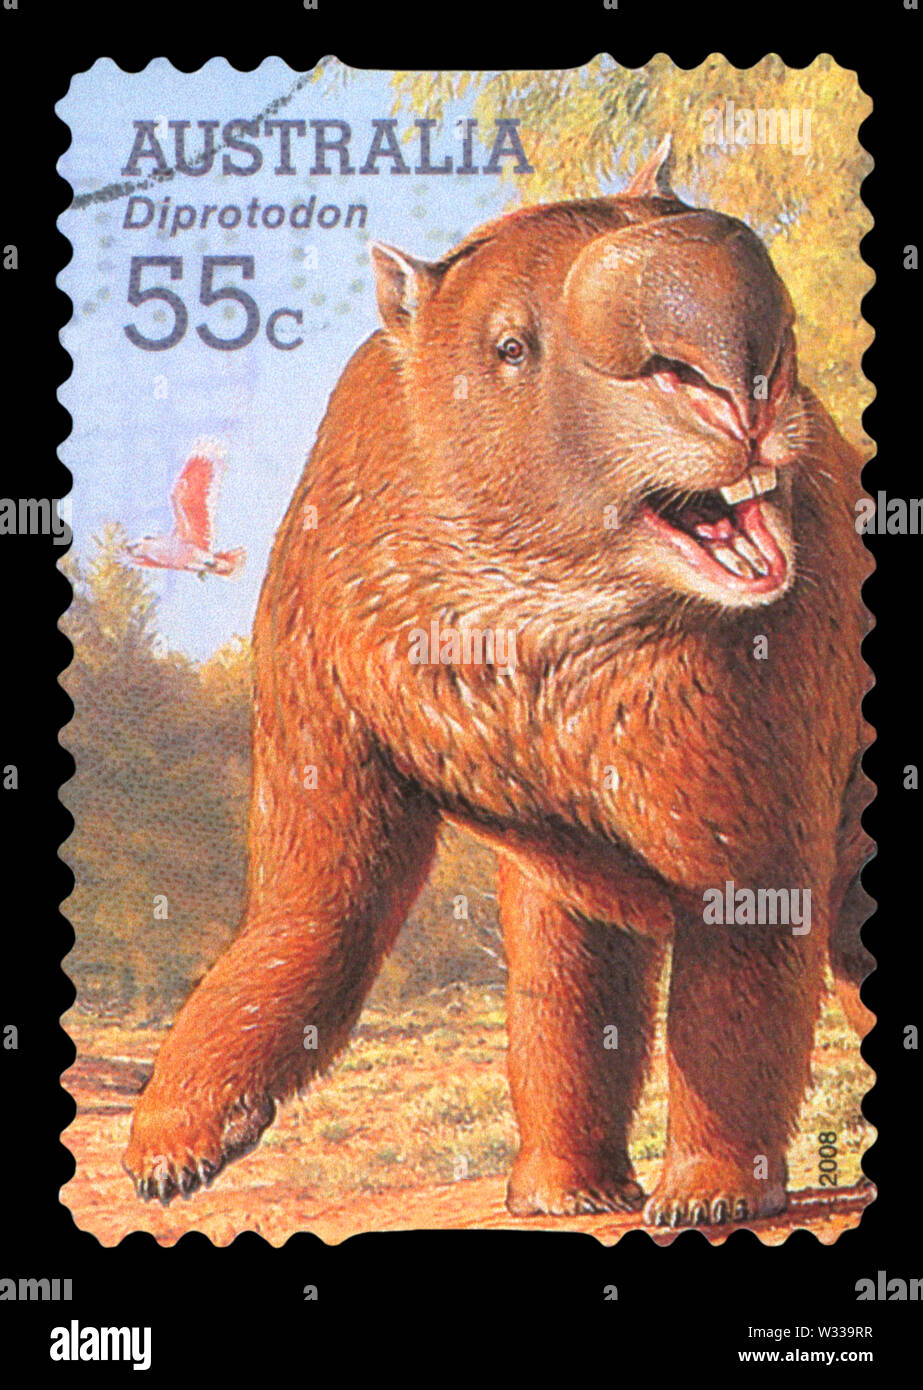 AUSTRALIA - CIRCA 2008: A stamp printed in Australia shows an Australia animal - Diprotodon, circa 2008. Stock Photo